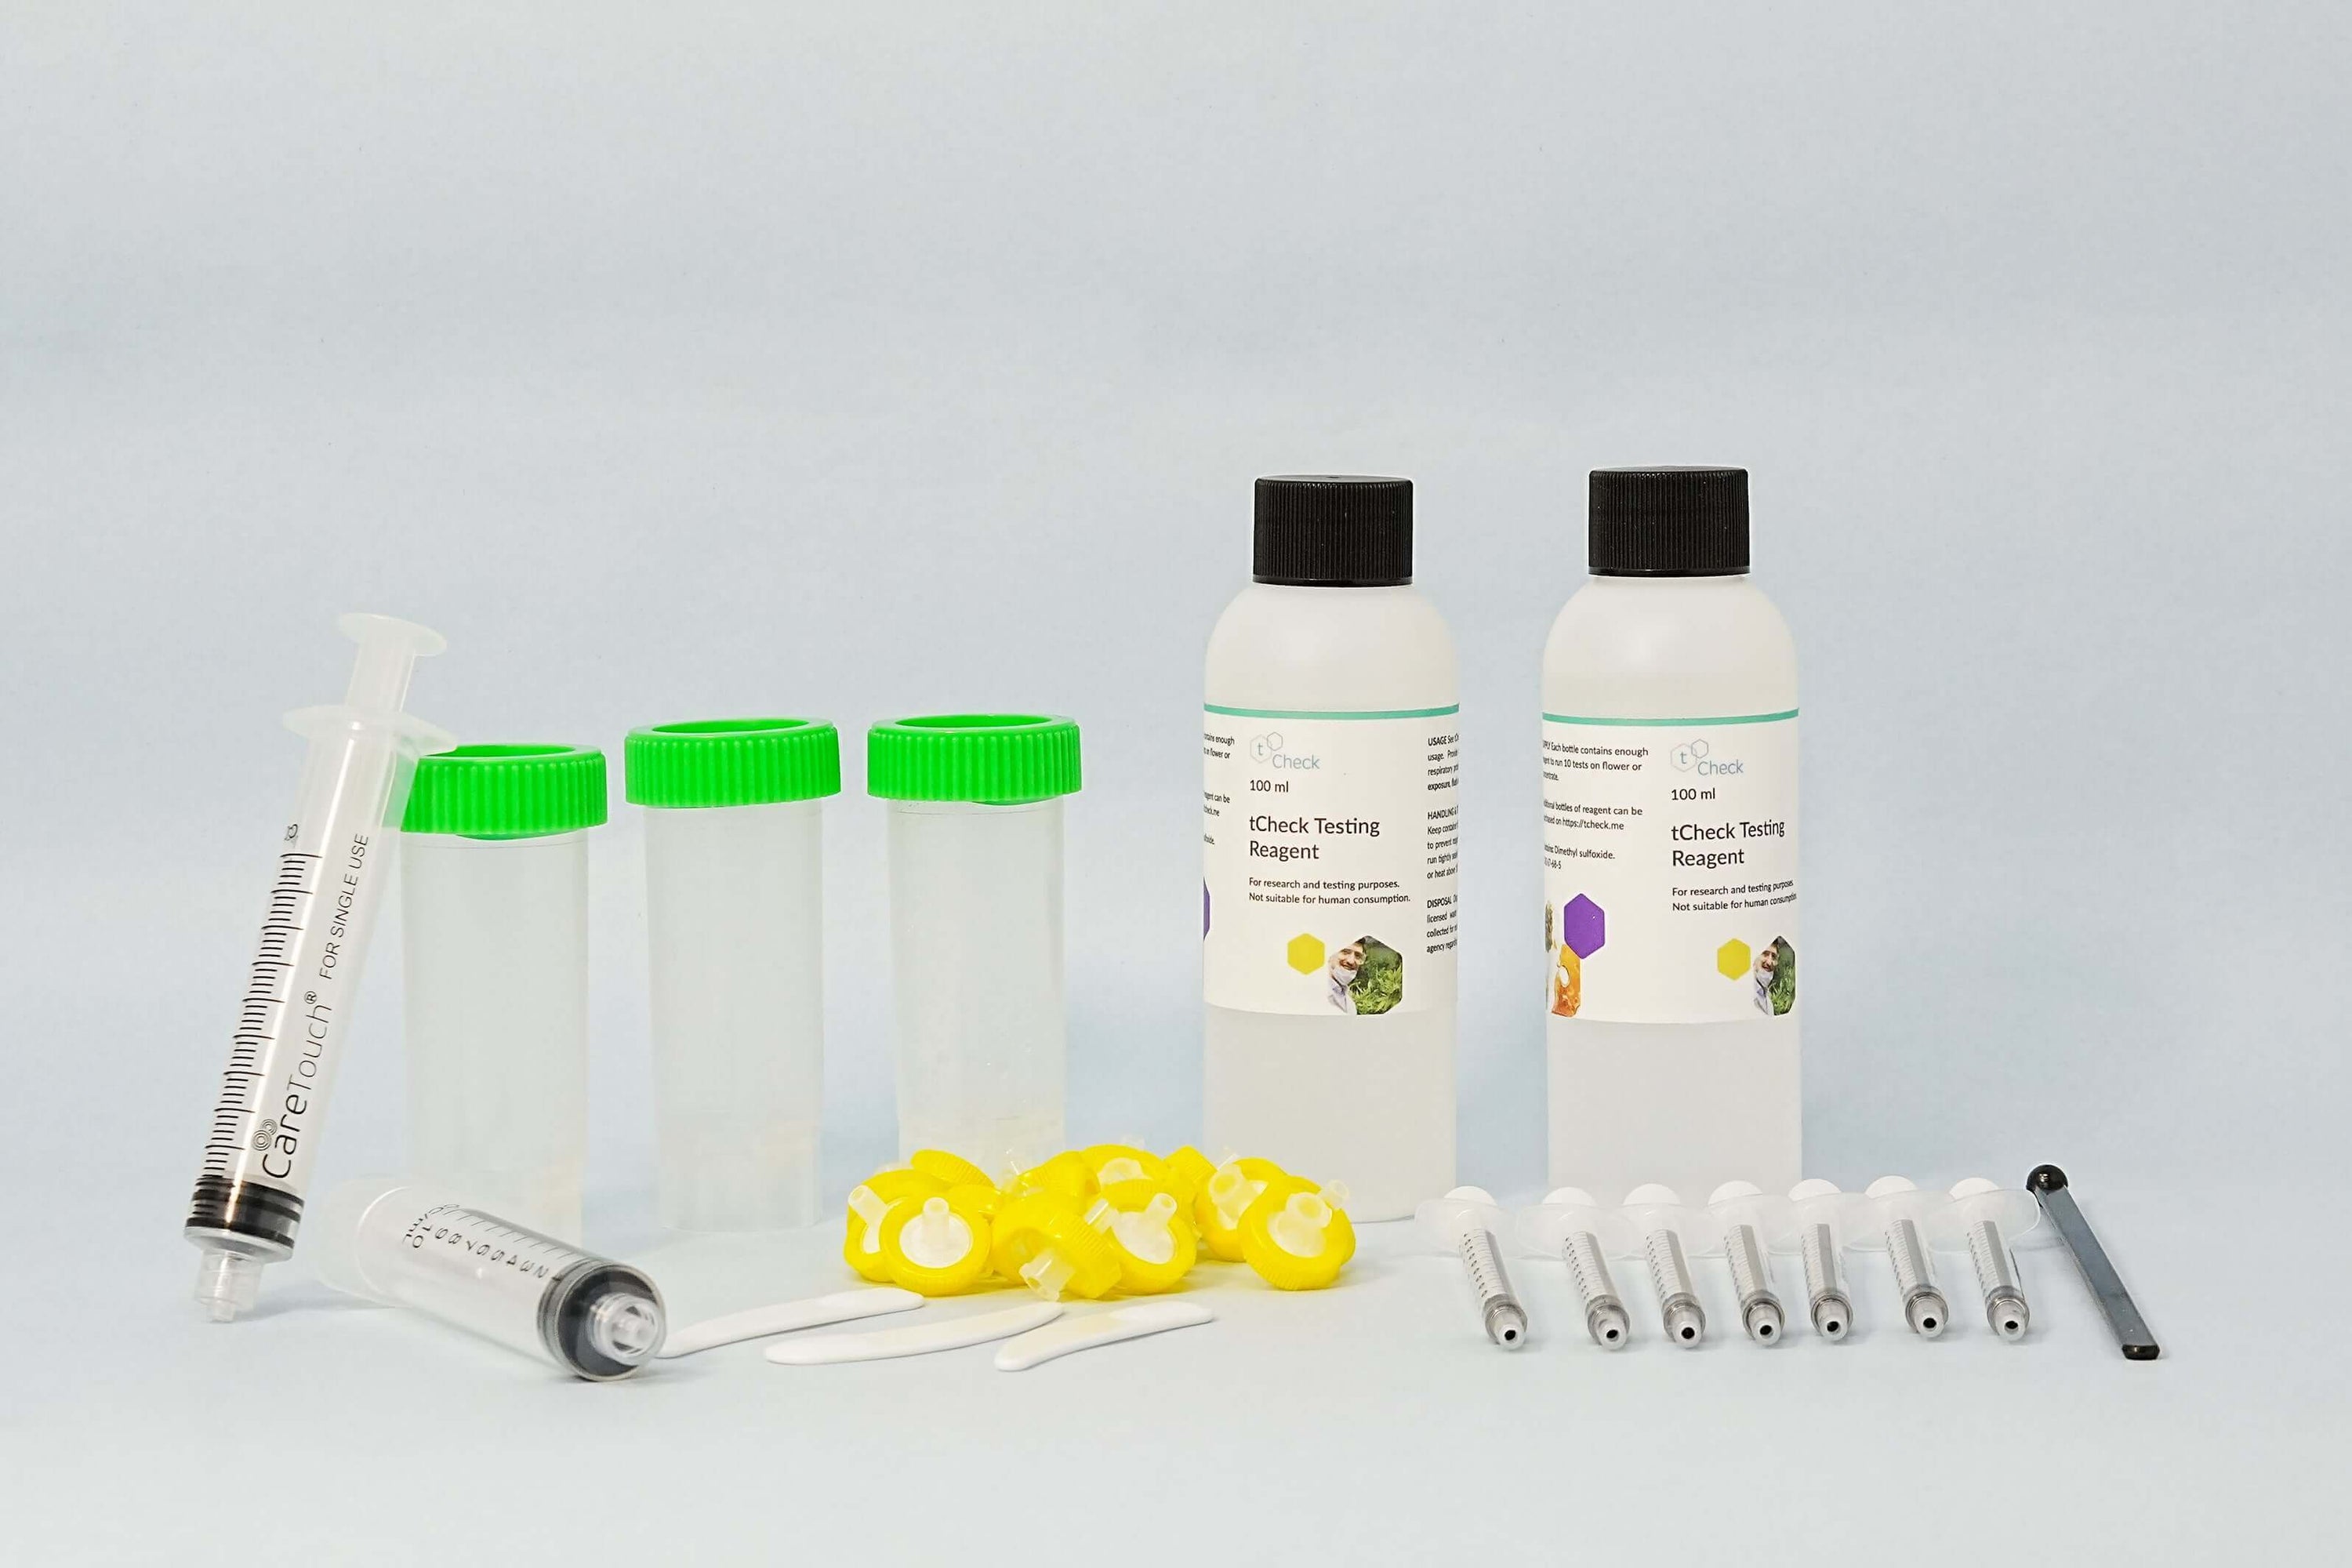 tCheck 3 THC Potency Tester Expansion kit